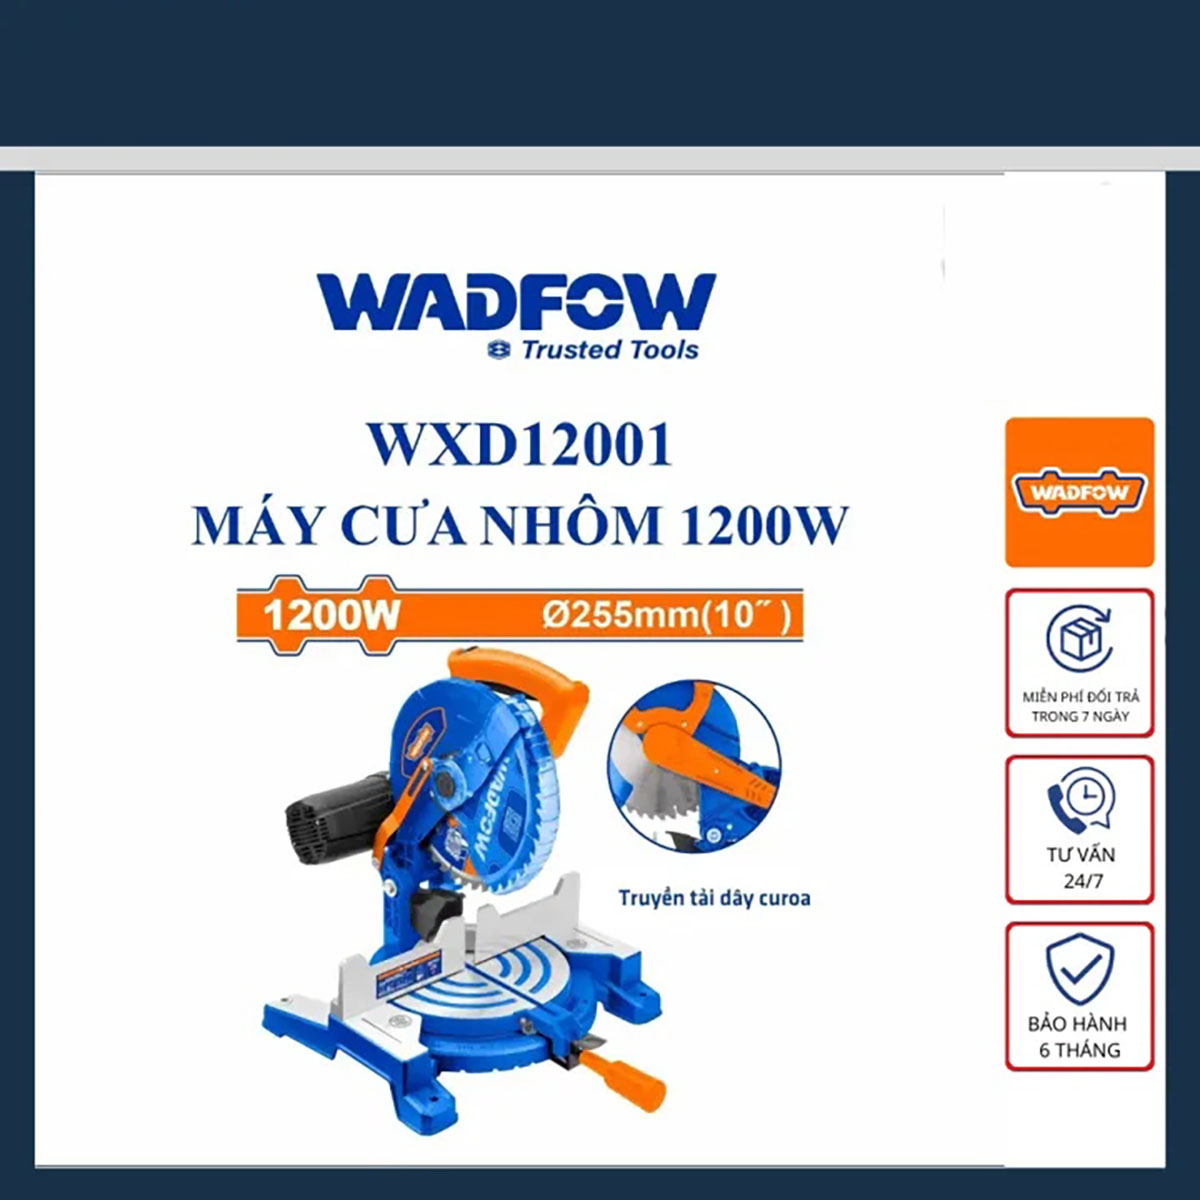 Hình ảnh 5 của mặt hàng Máy cưa nhôm 1200W Wadfow WXD12001